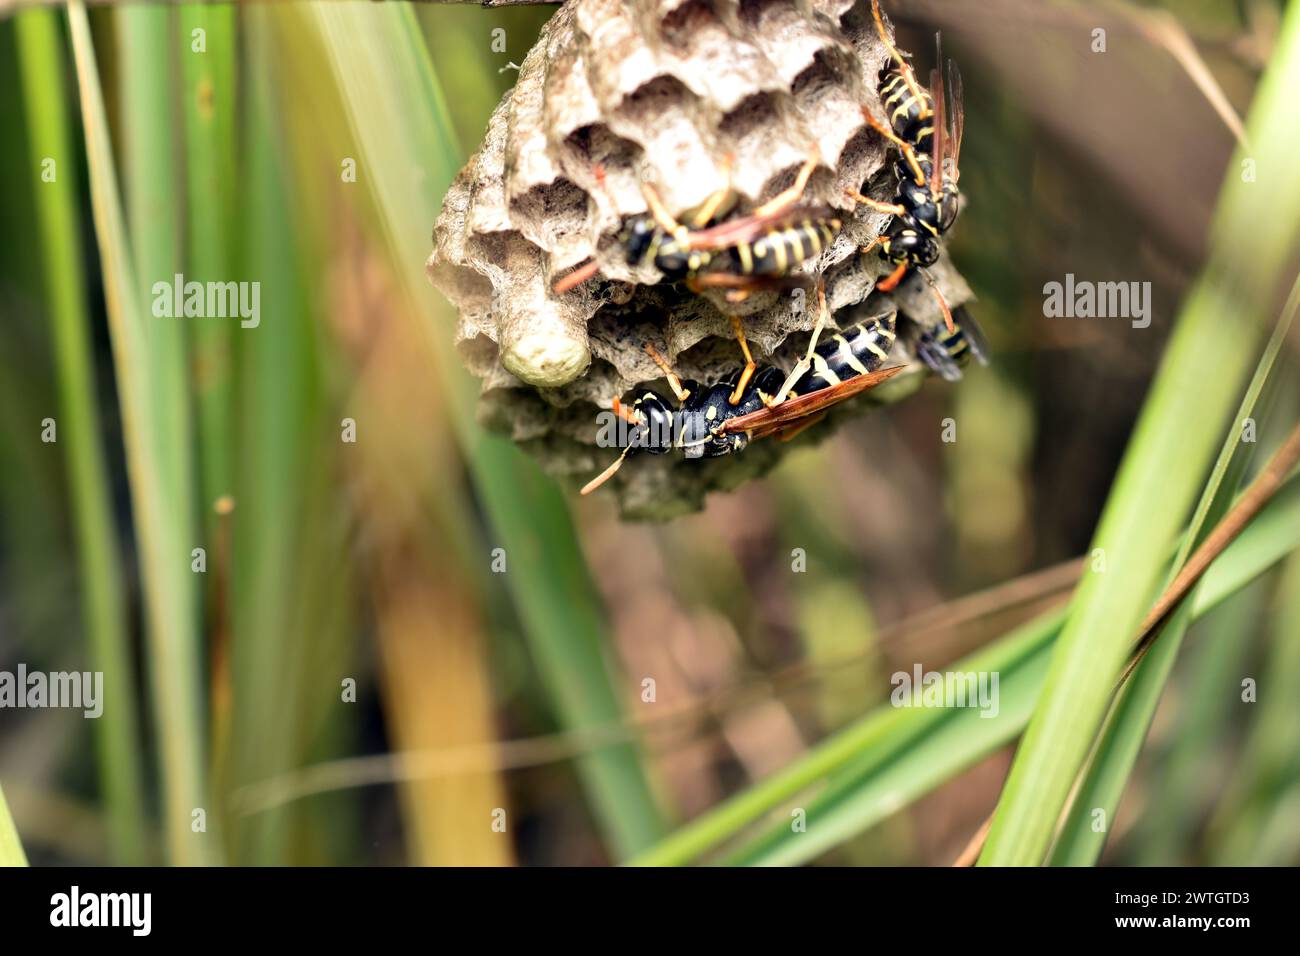 Eine Art Wespennest, dessen Waben mit Larven gefüllt sind. Das Nest hängt an einem Grasstängel. Wespen werden von Larven bewacht. Stockfoto